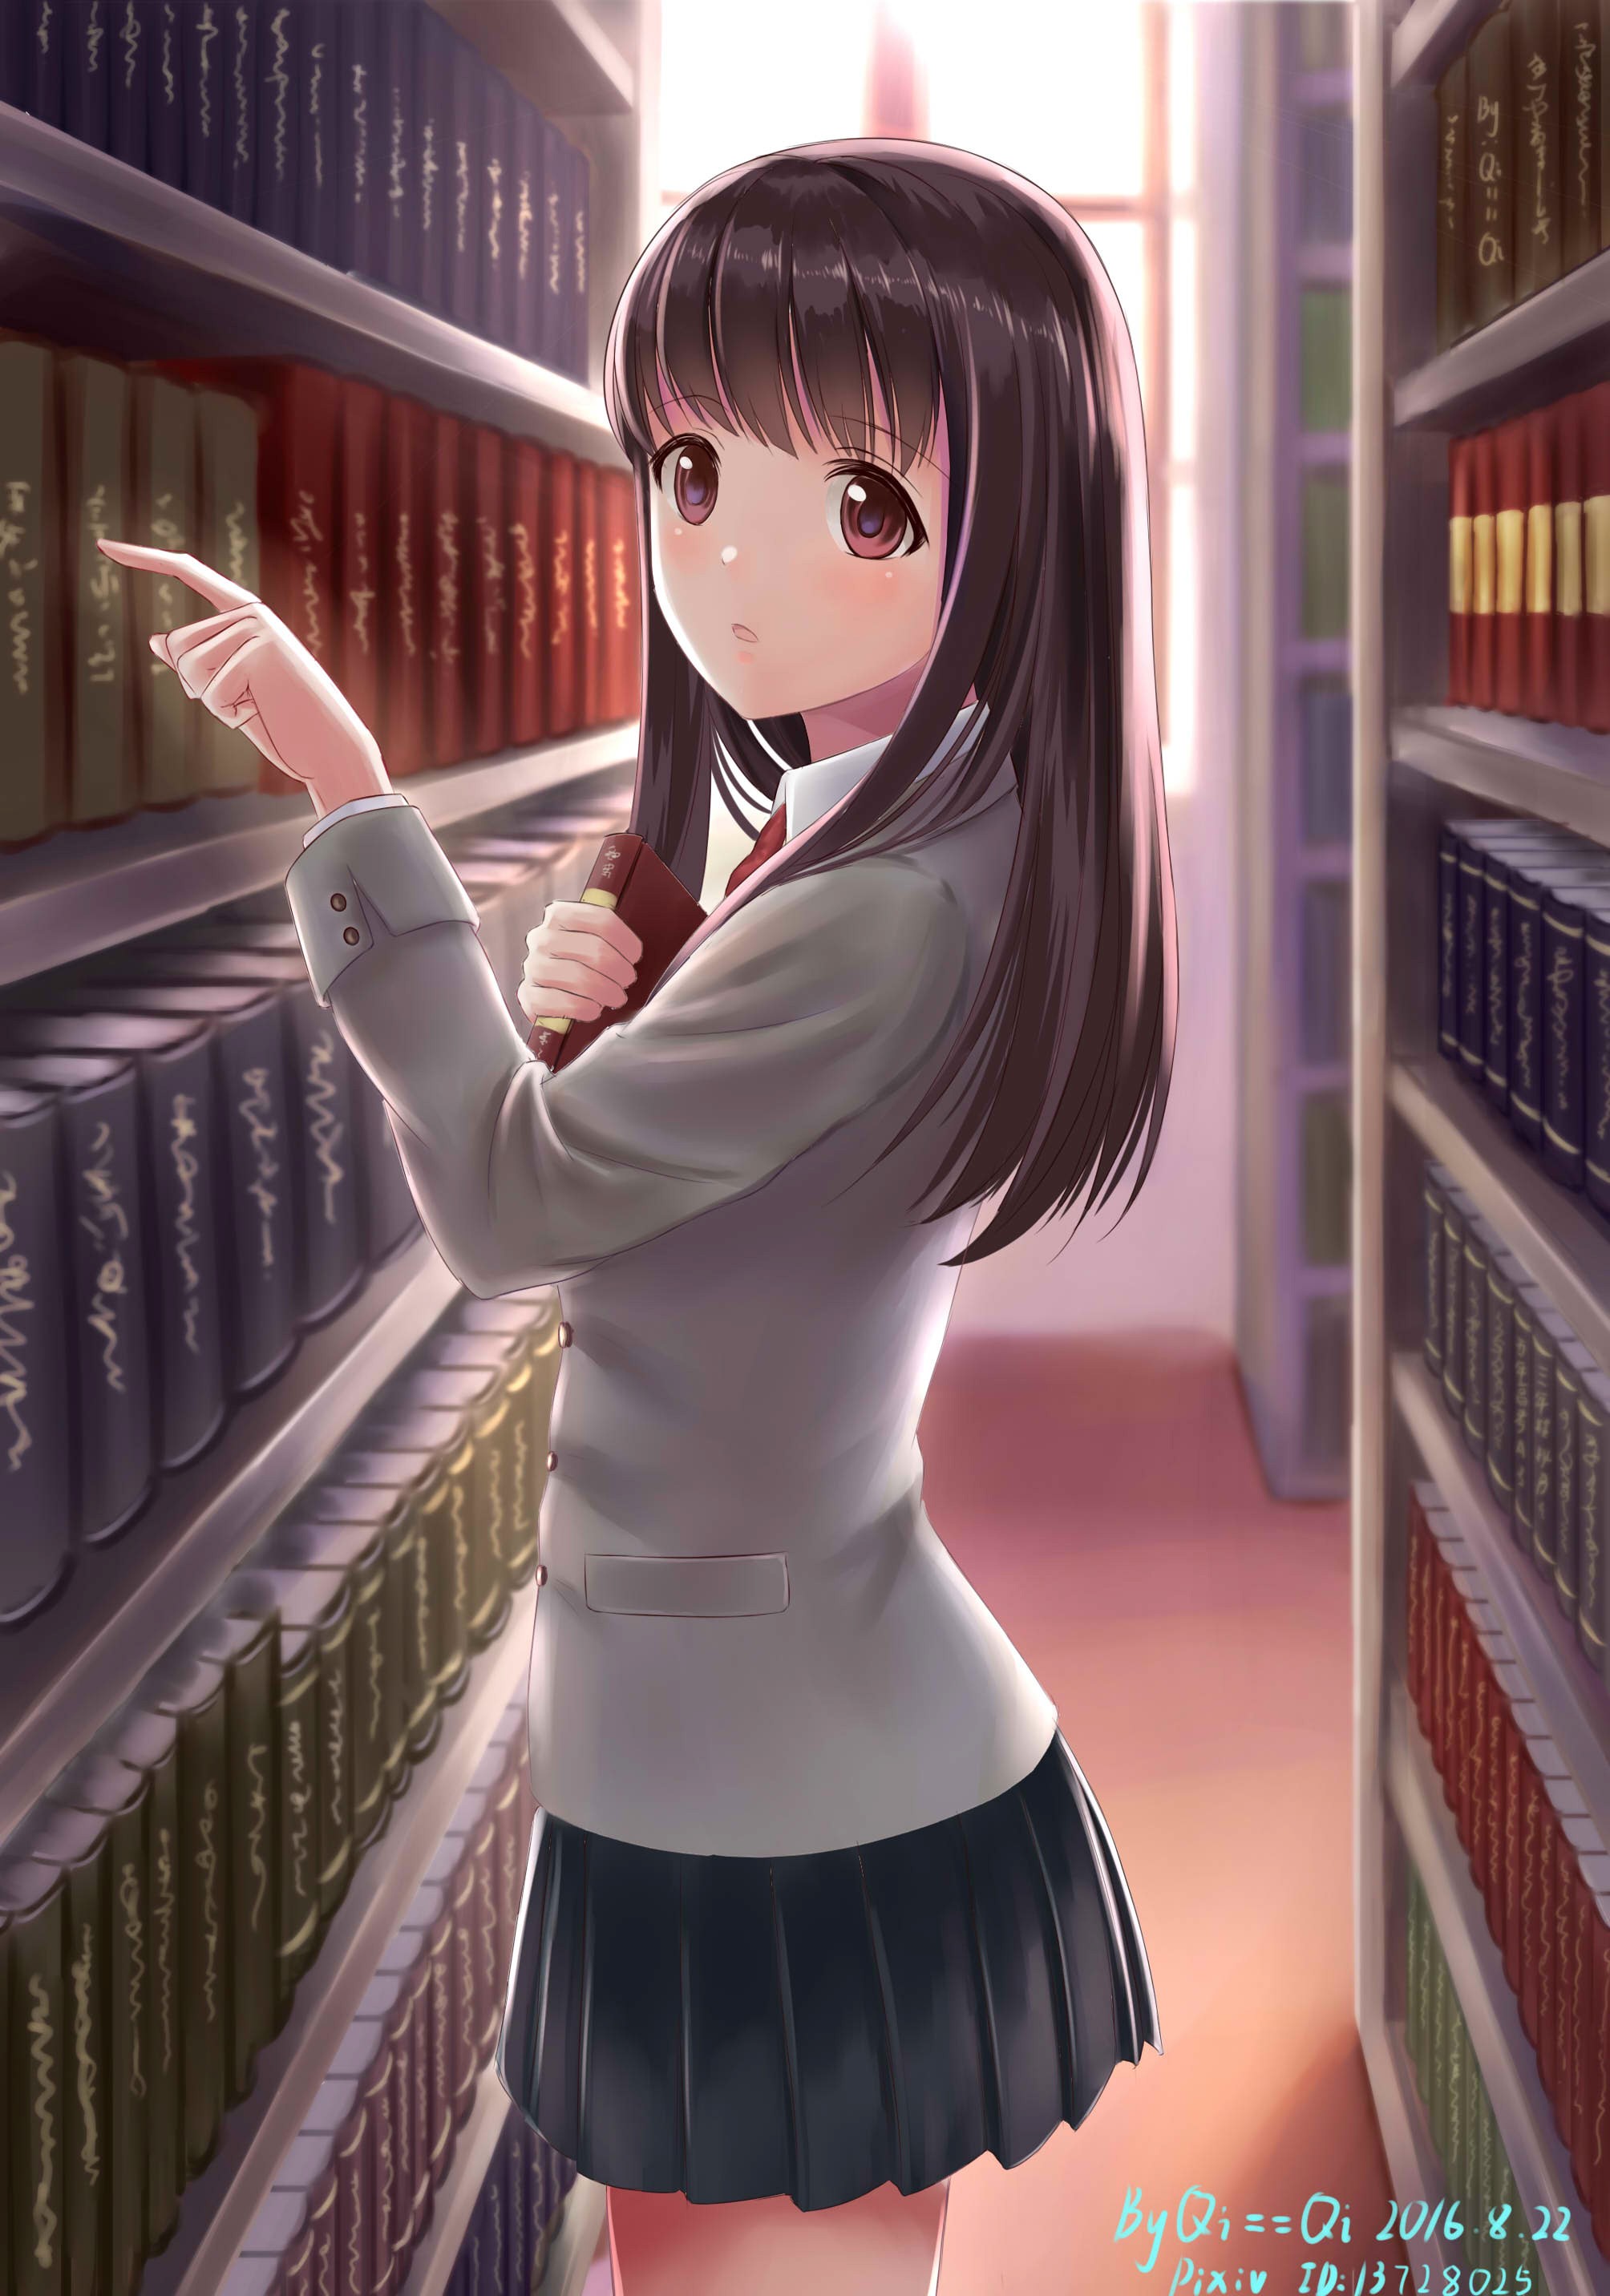 Anime 2008x2864 anime anime girls long hair brunette brown eyes library books skirt